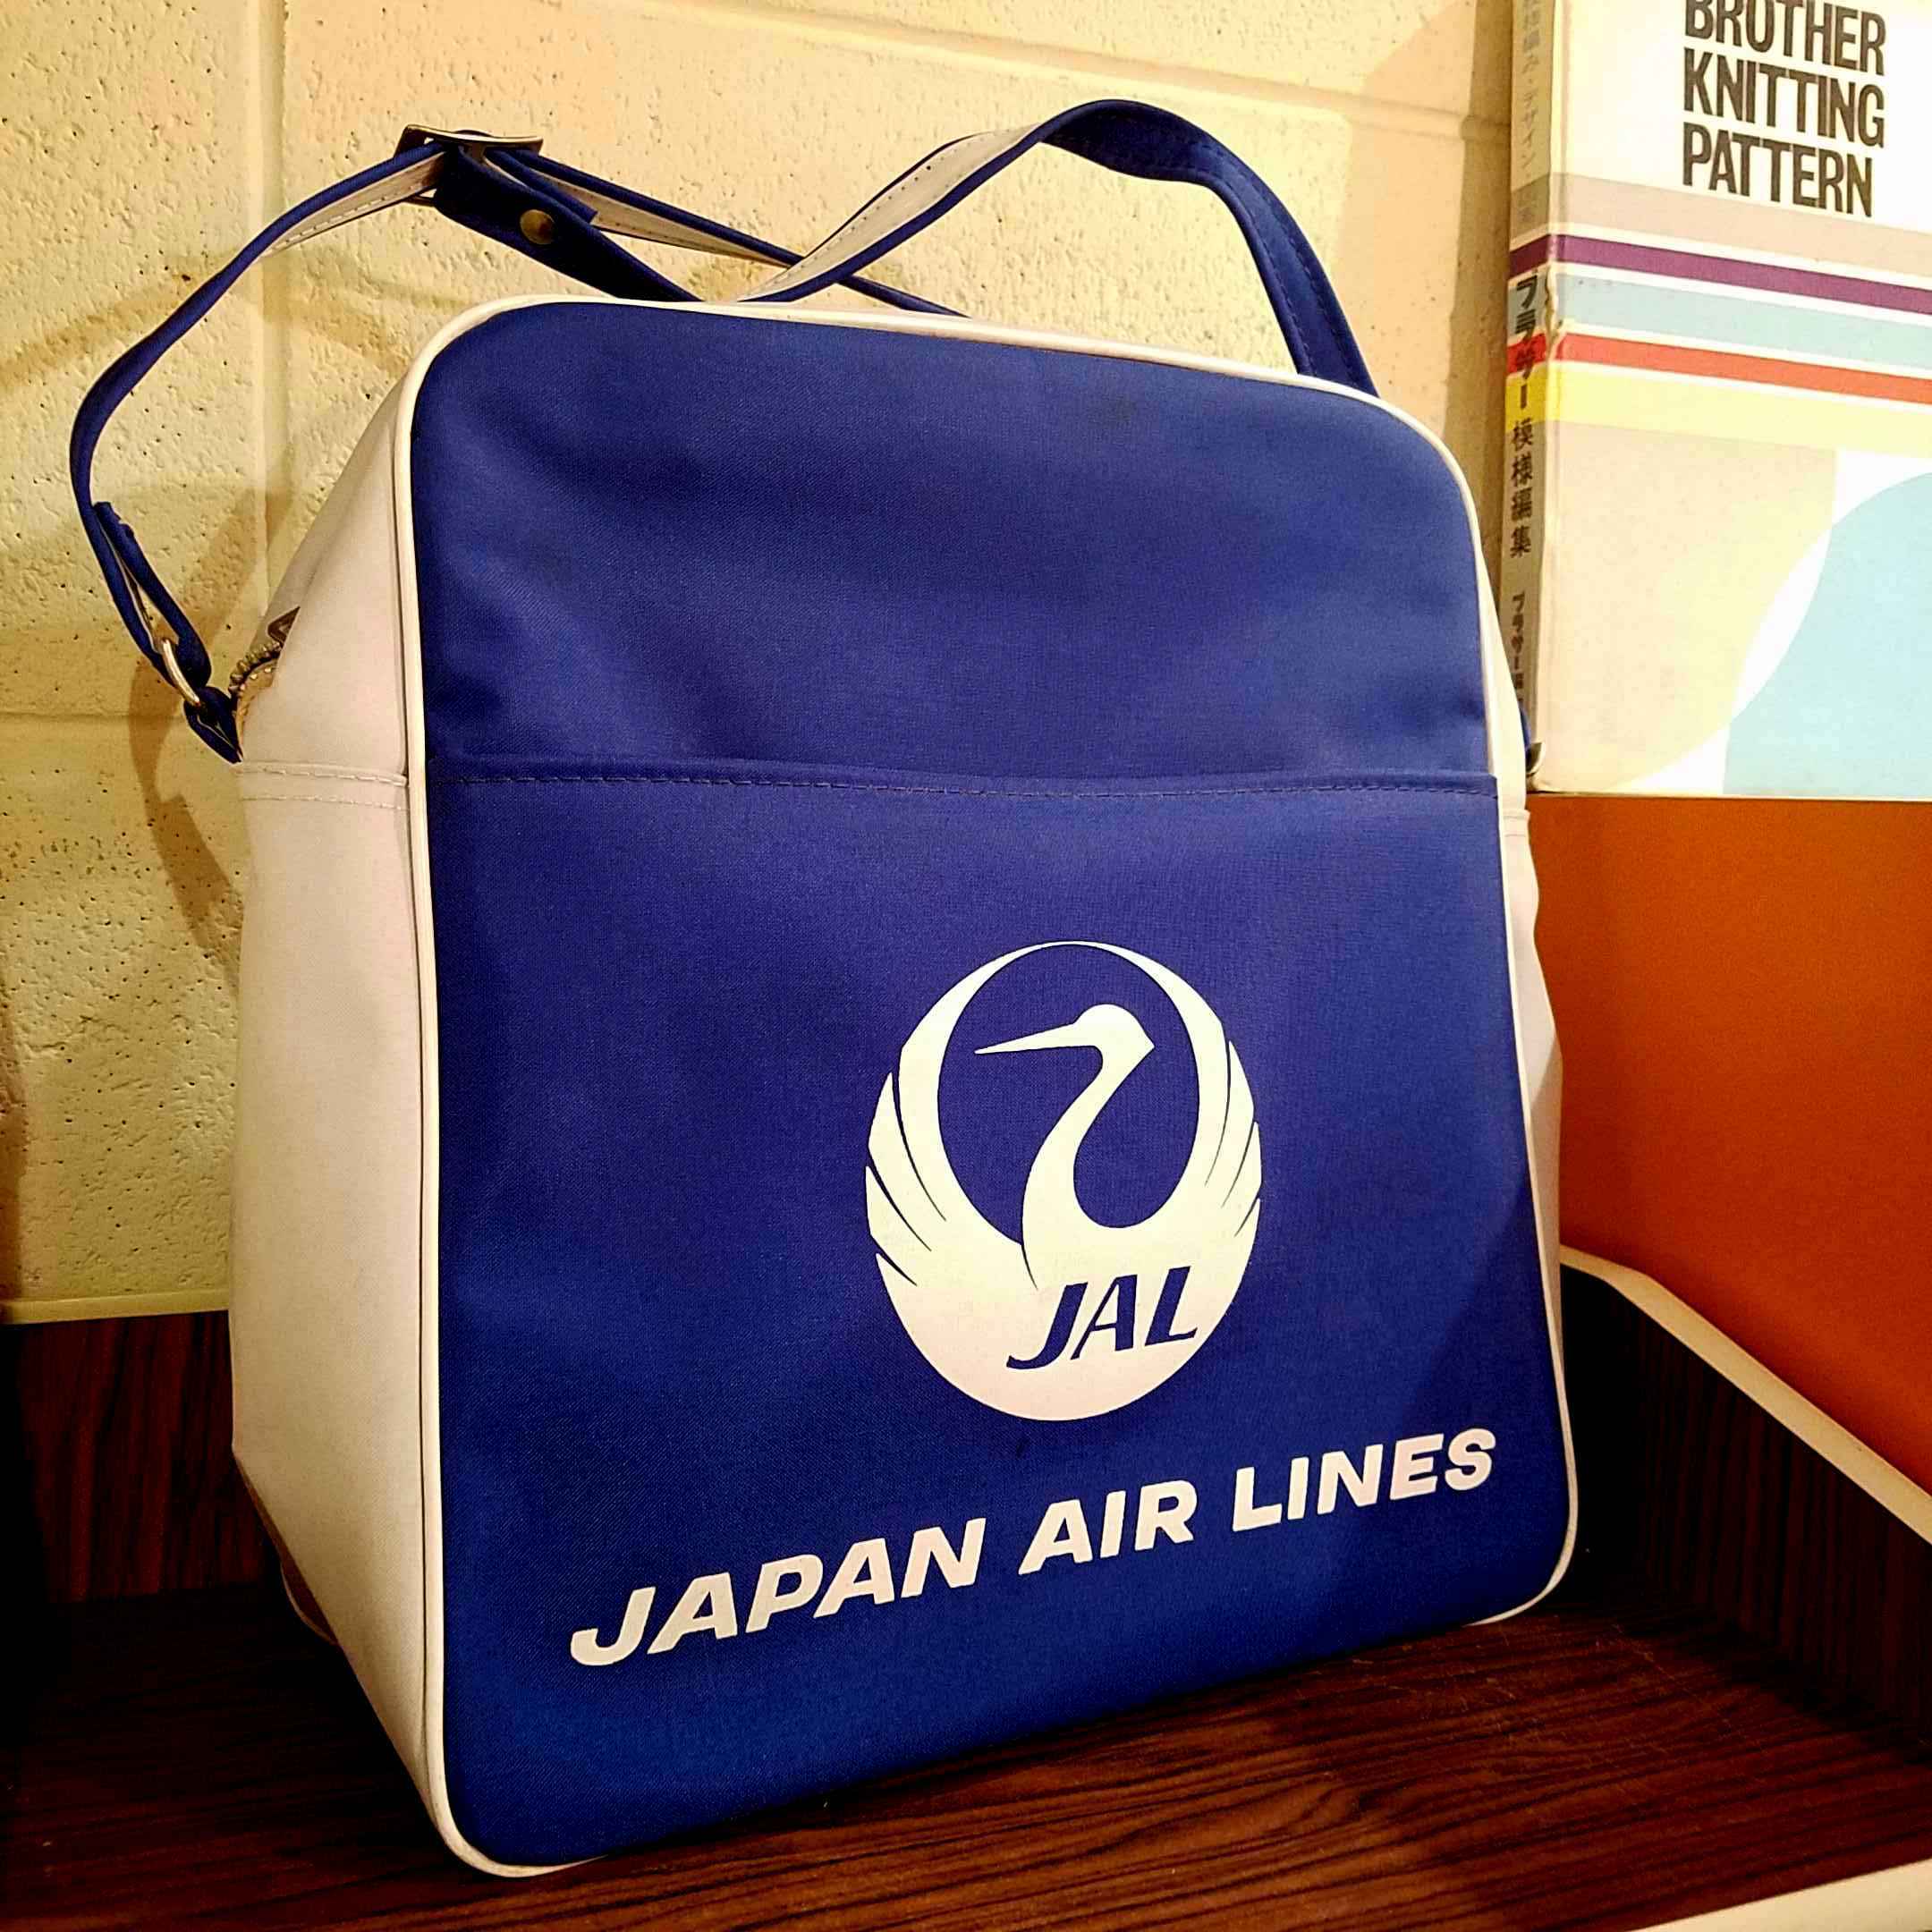 70年代 JAL(日本航空) エアラインバッグ [Sold Out]過去の販売商品